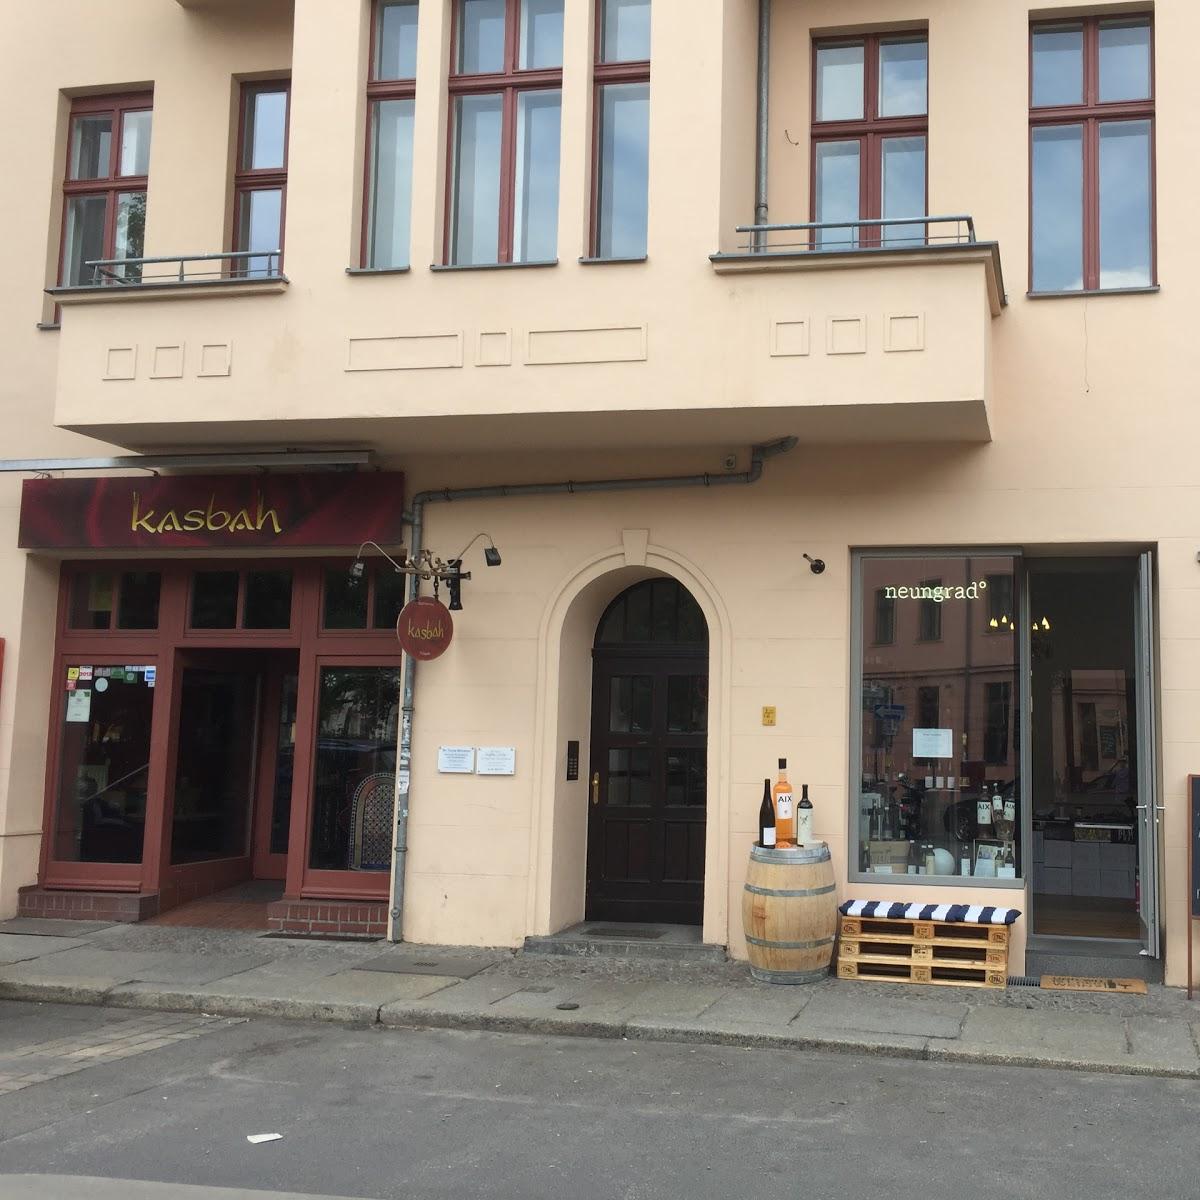 Restaurant "Weinhandlung neungrad" in Berlin